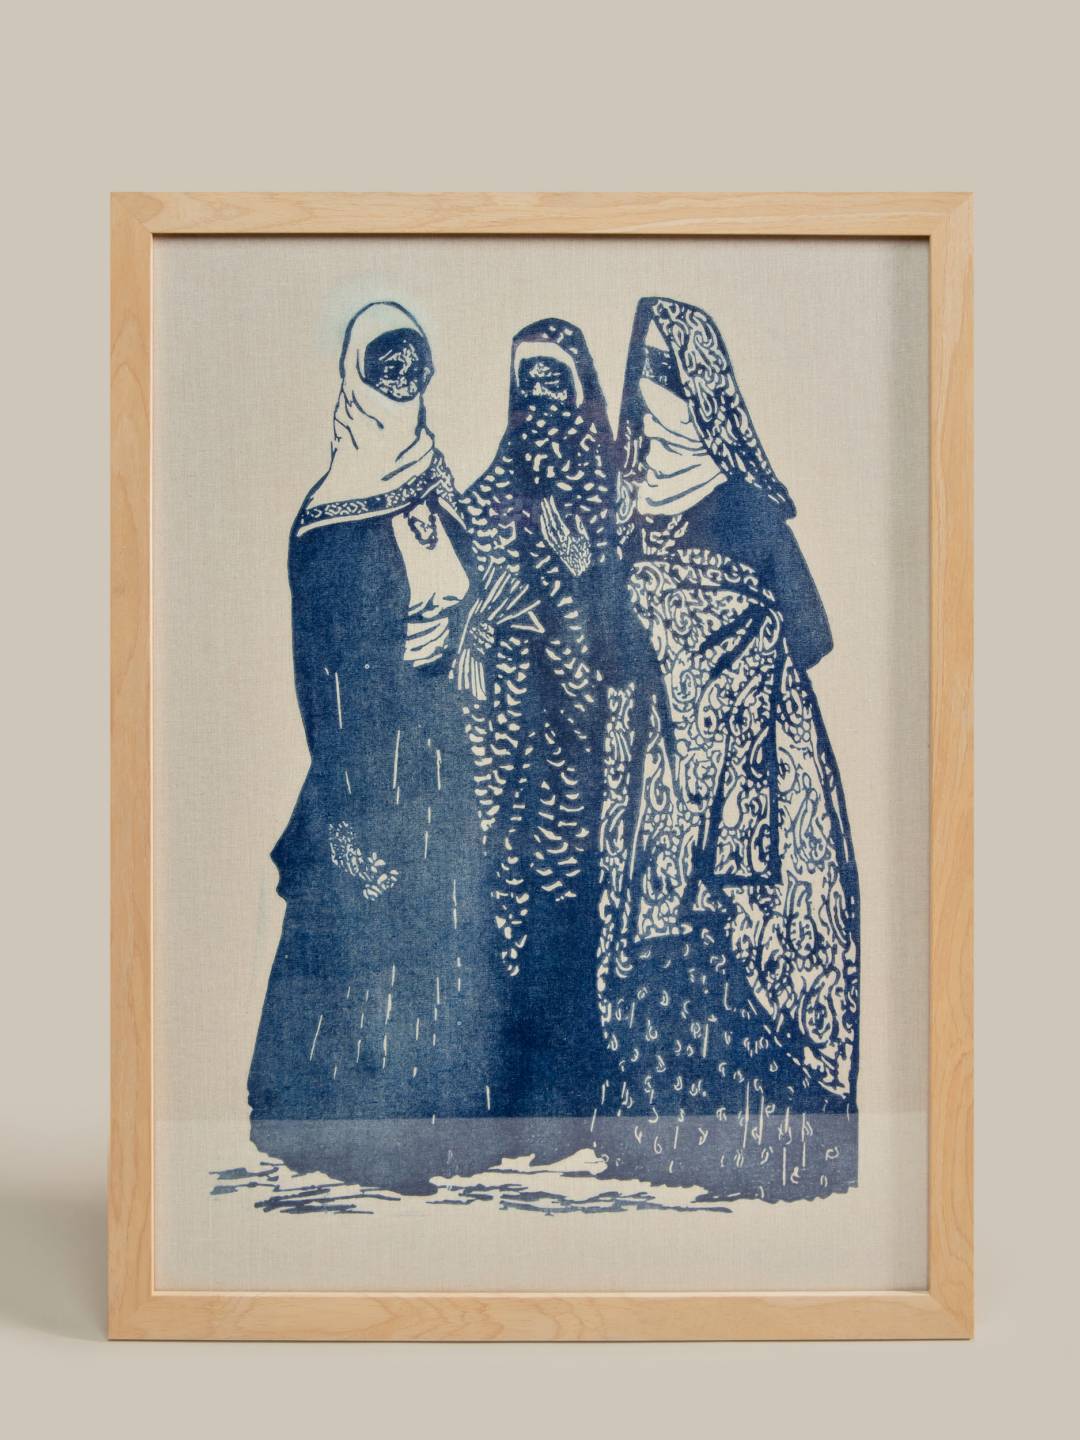 Maral Rahmanzadeh Linocut Hand Print "Our Girls Series" V3